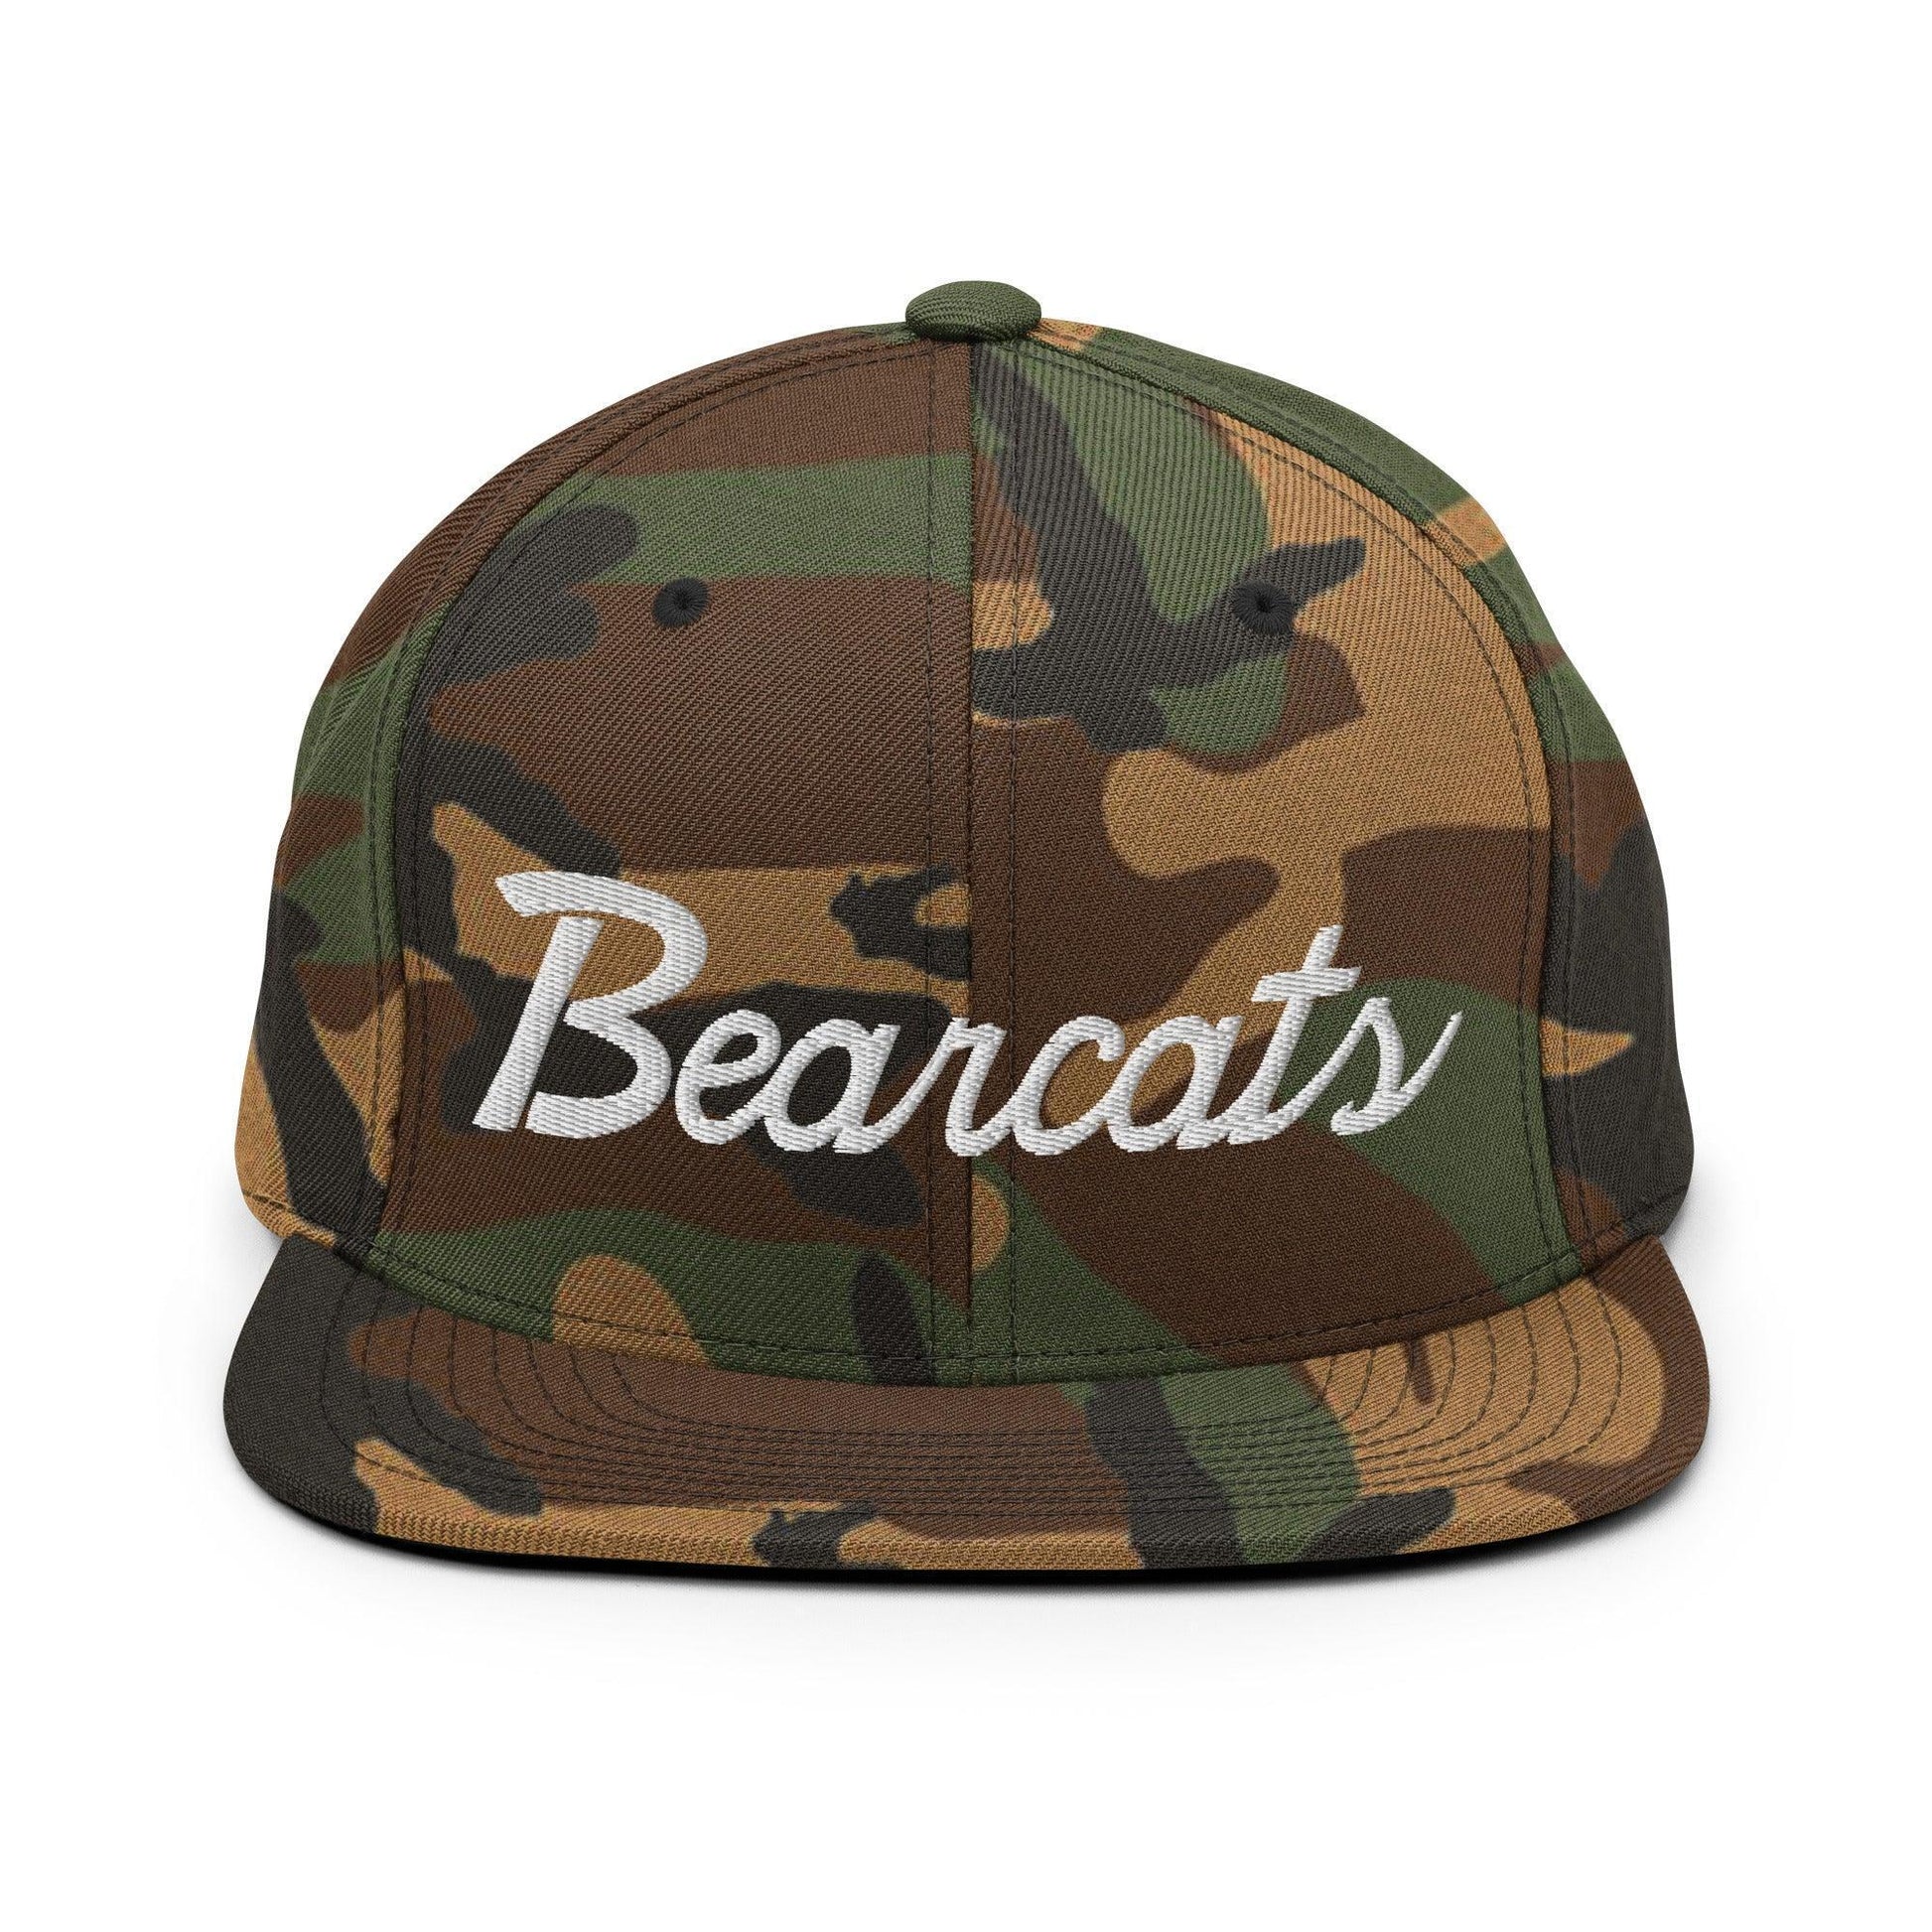 Bearcats School Mascot Script Snapback Hat Green Camo